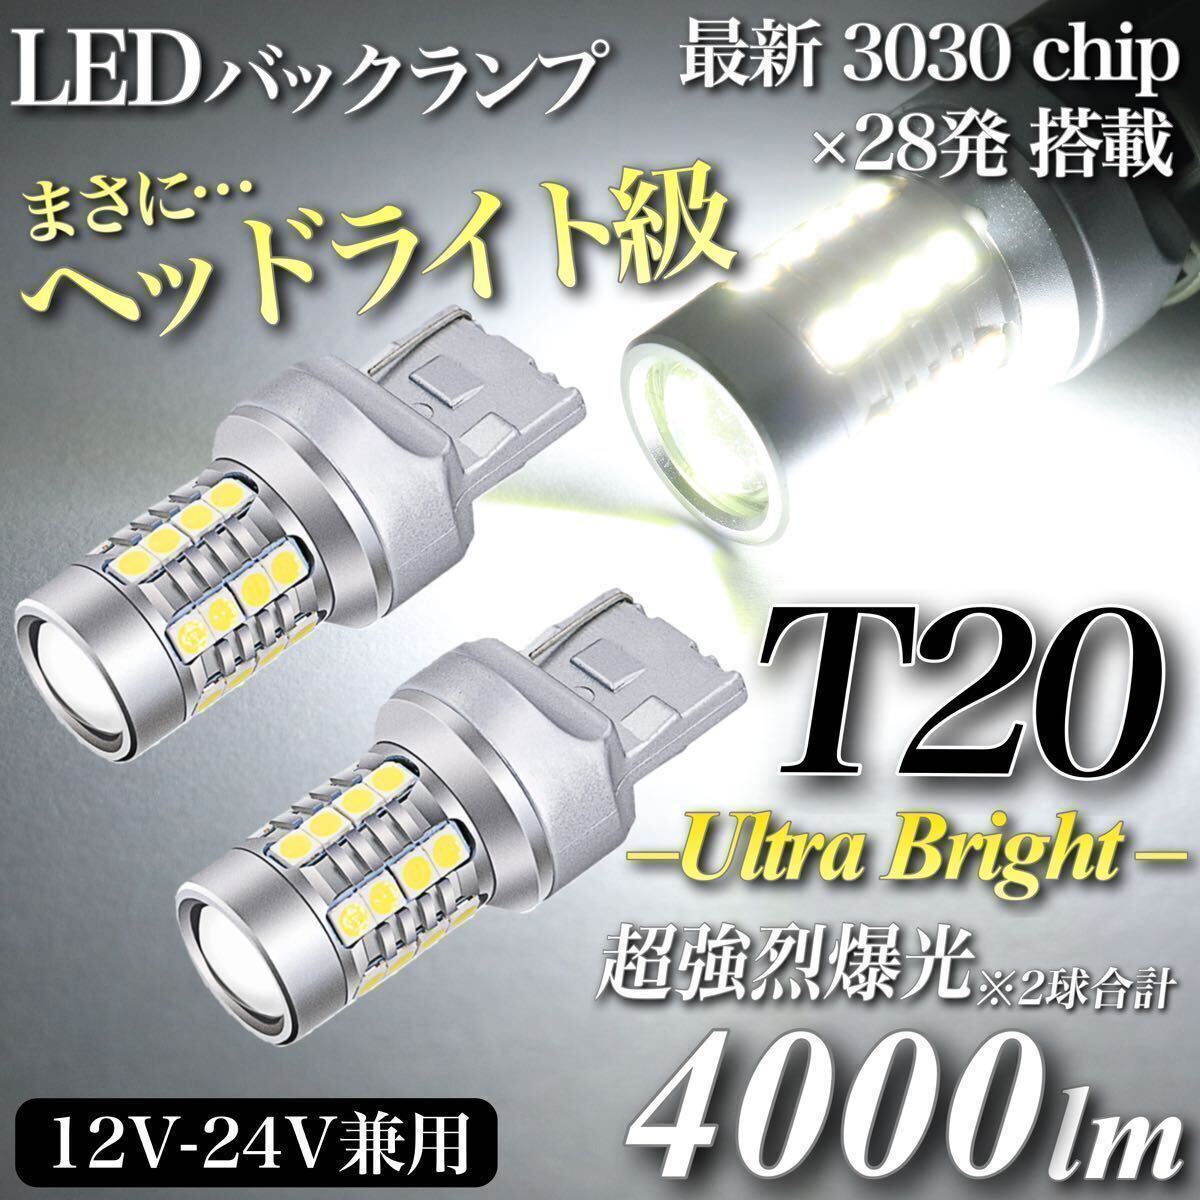 【送料無料】4000lm ヘッドライト級 超爆光 驚異 T20 LED バックランプ キャンセラー内蔵 6500K 純白 New 3030チップ 28発 無極性 2個入_画像1